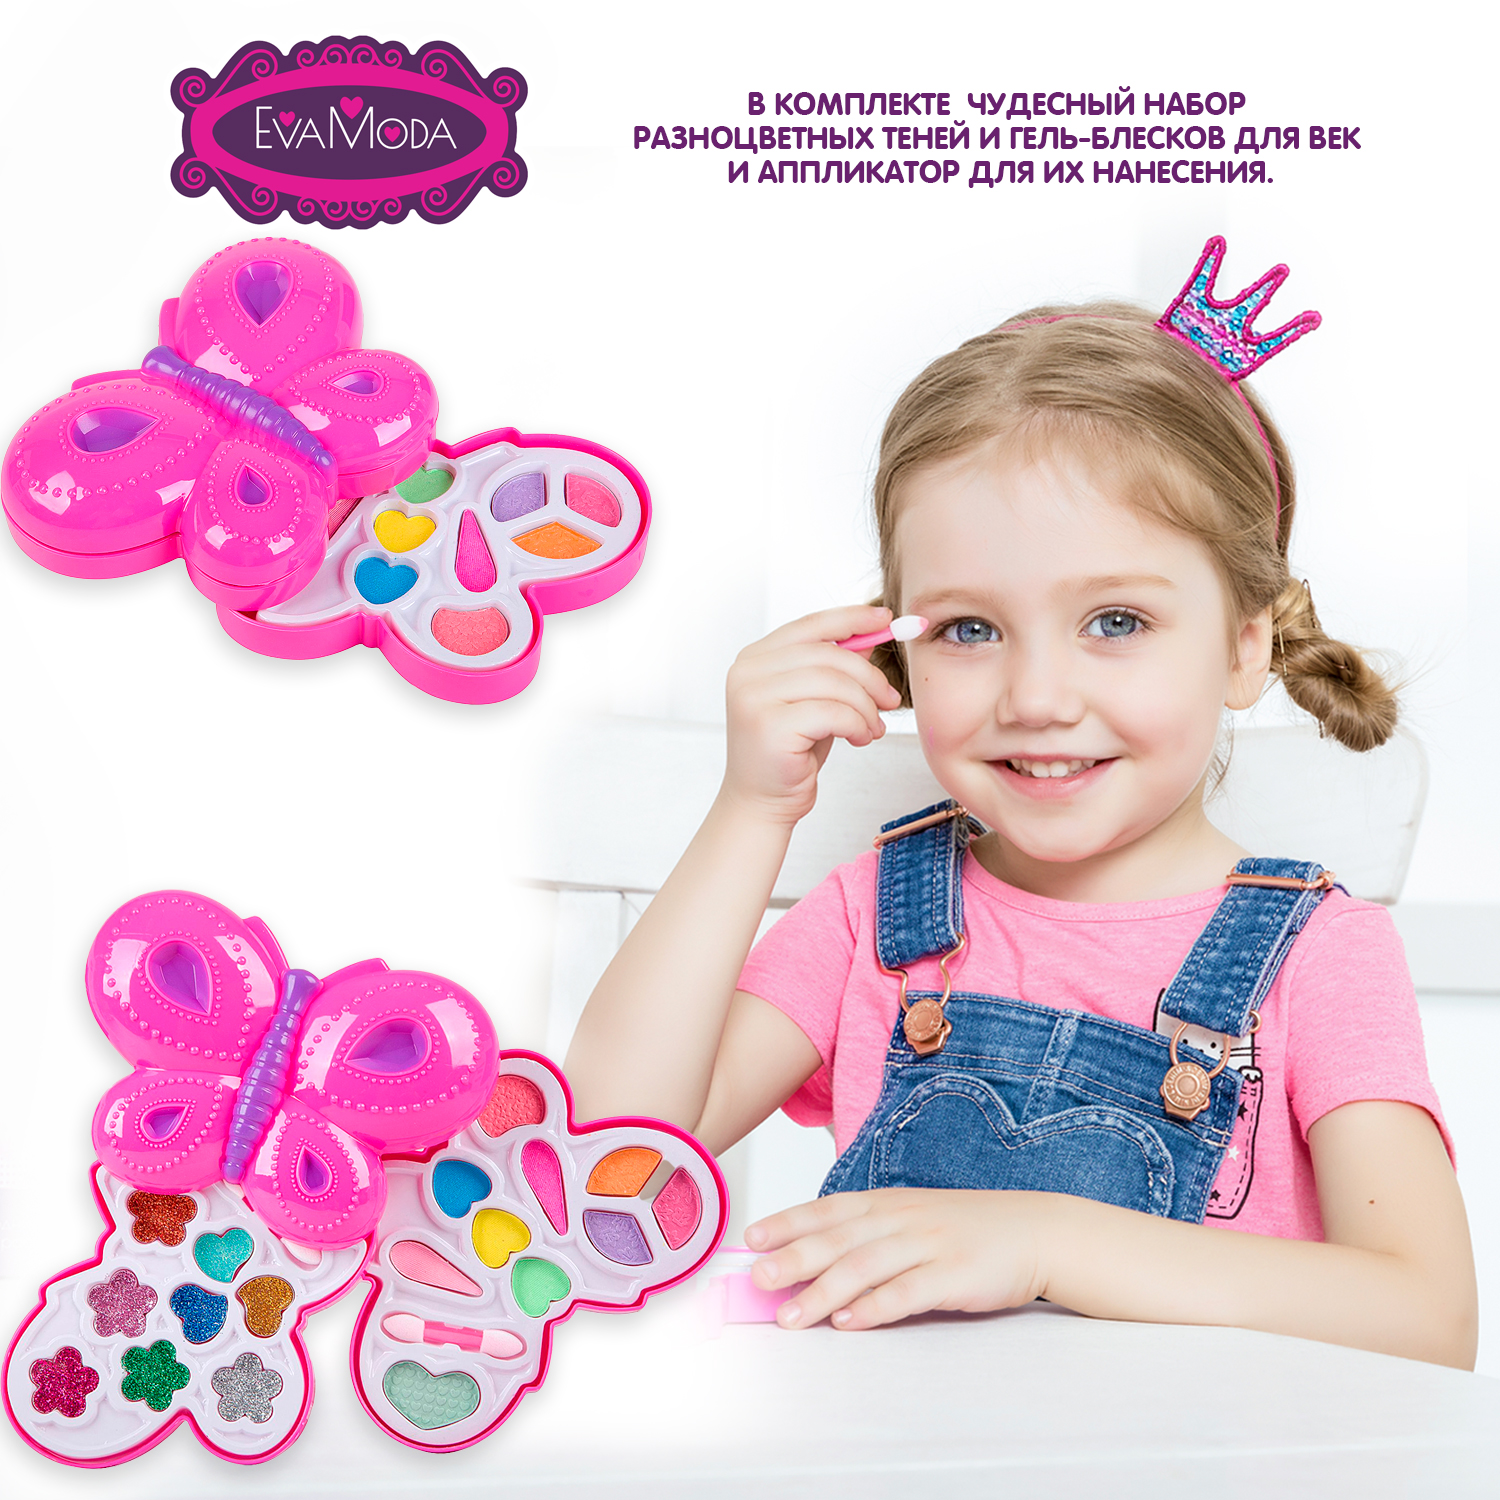 Детская декоративная косметика BONDIBON серия Eva Moda косметичка Бабочка розового цвета - фото 3